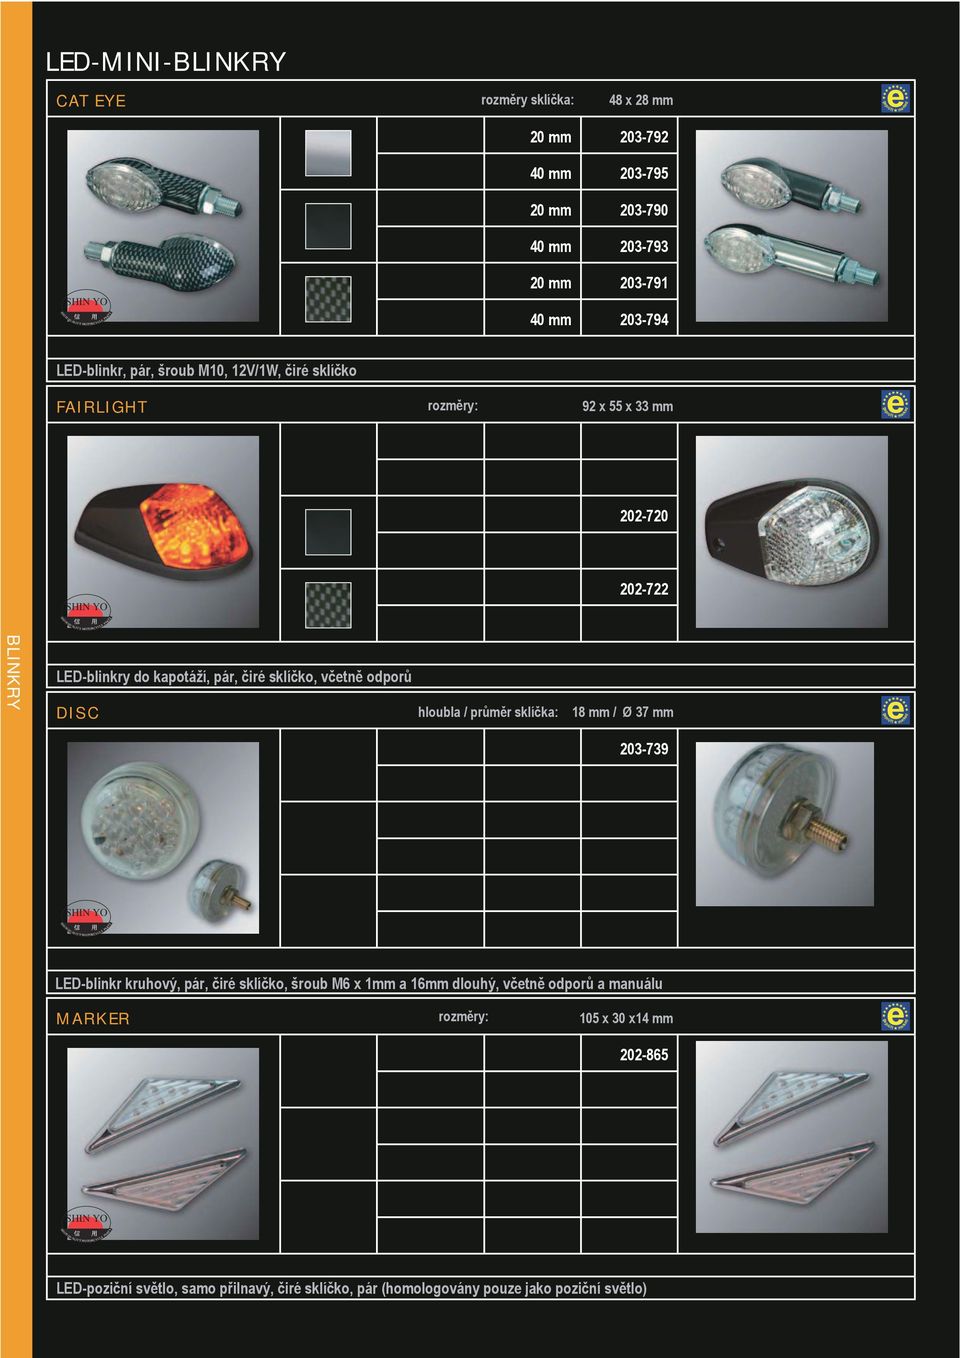 sklíčko, včetně odporů DISC hloubla / průměr sklíčka: 18 mm / Ø 37 mm 203-739 LED-blinkr kruhový, pár, čiré sklíčko, šroub M6 x 1mm a 16mm dlouhý,